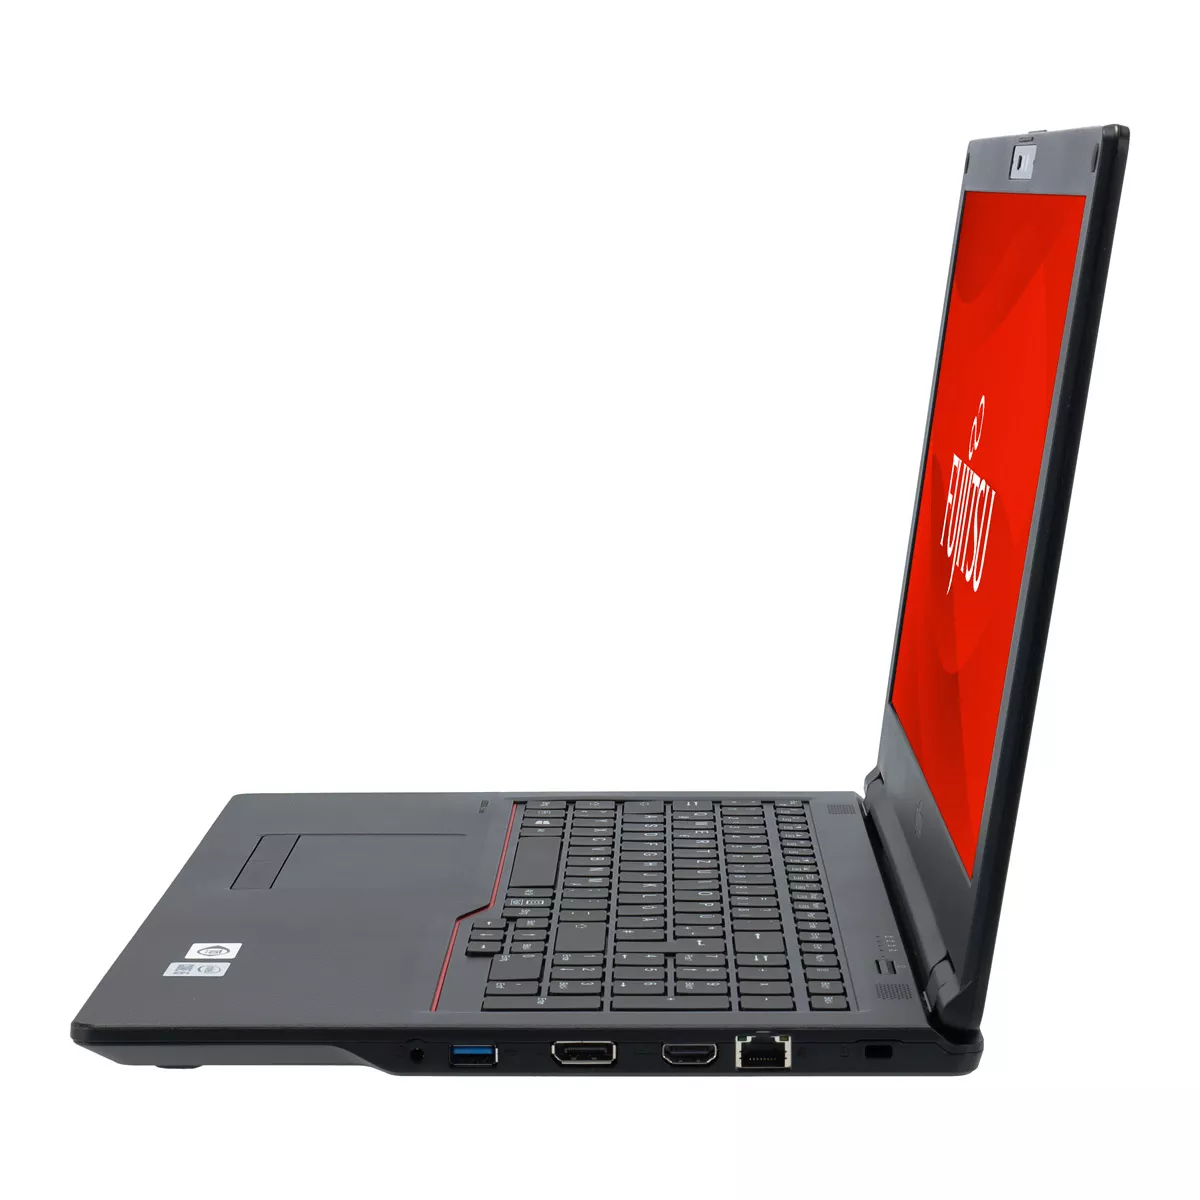 Fujitsu Lifebook E558 Core i3 7020U 8 GB 500 M.2 SSD A